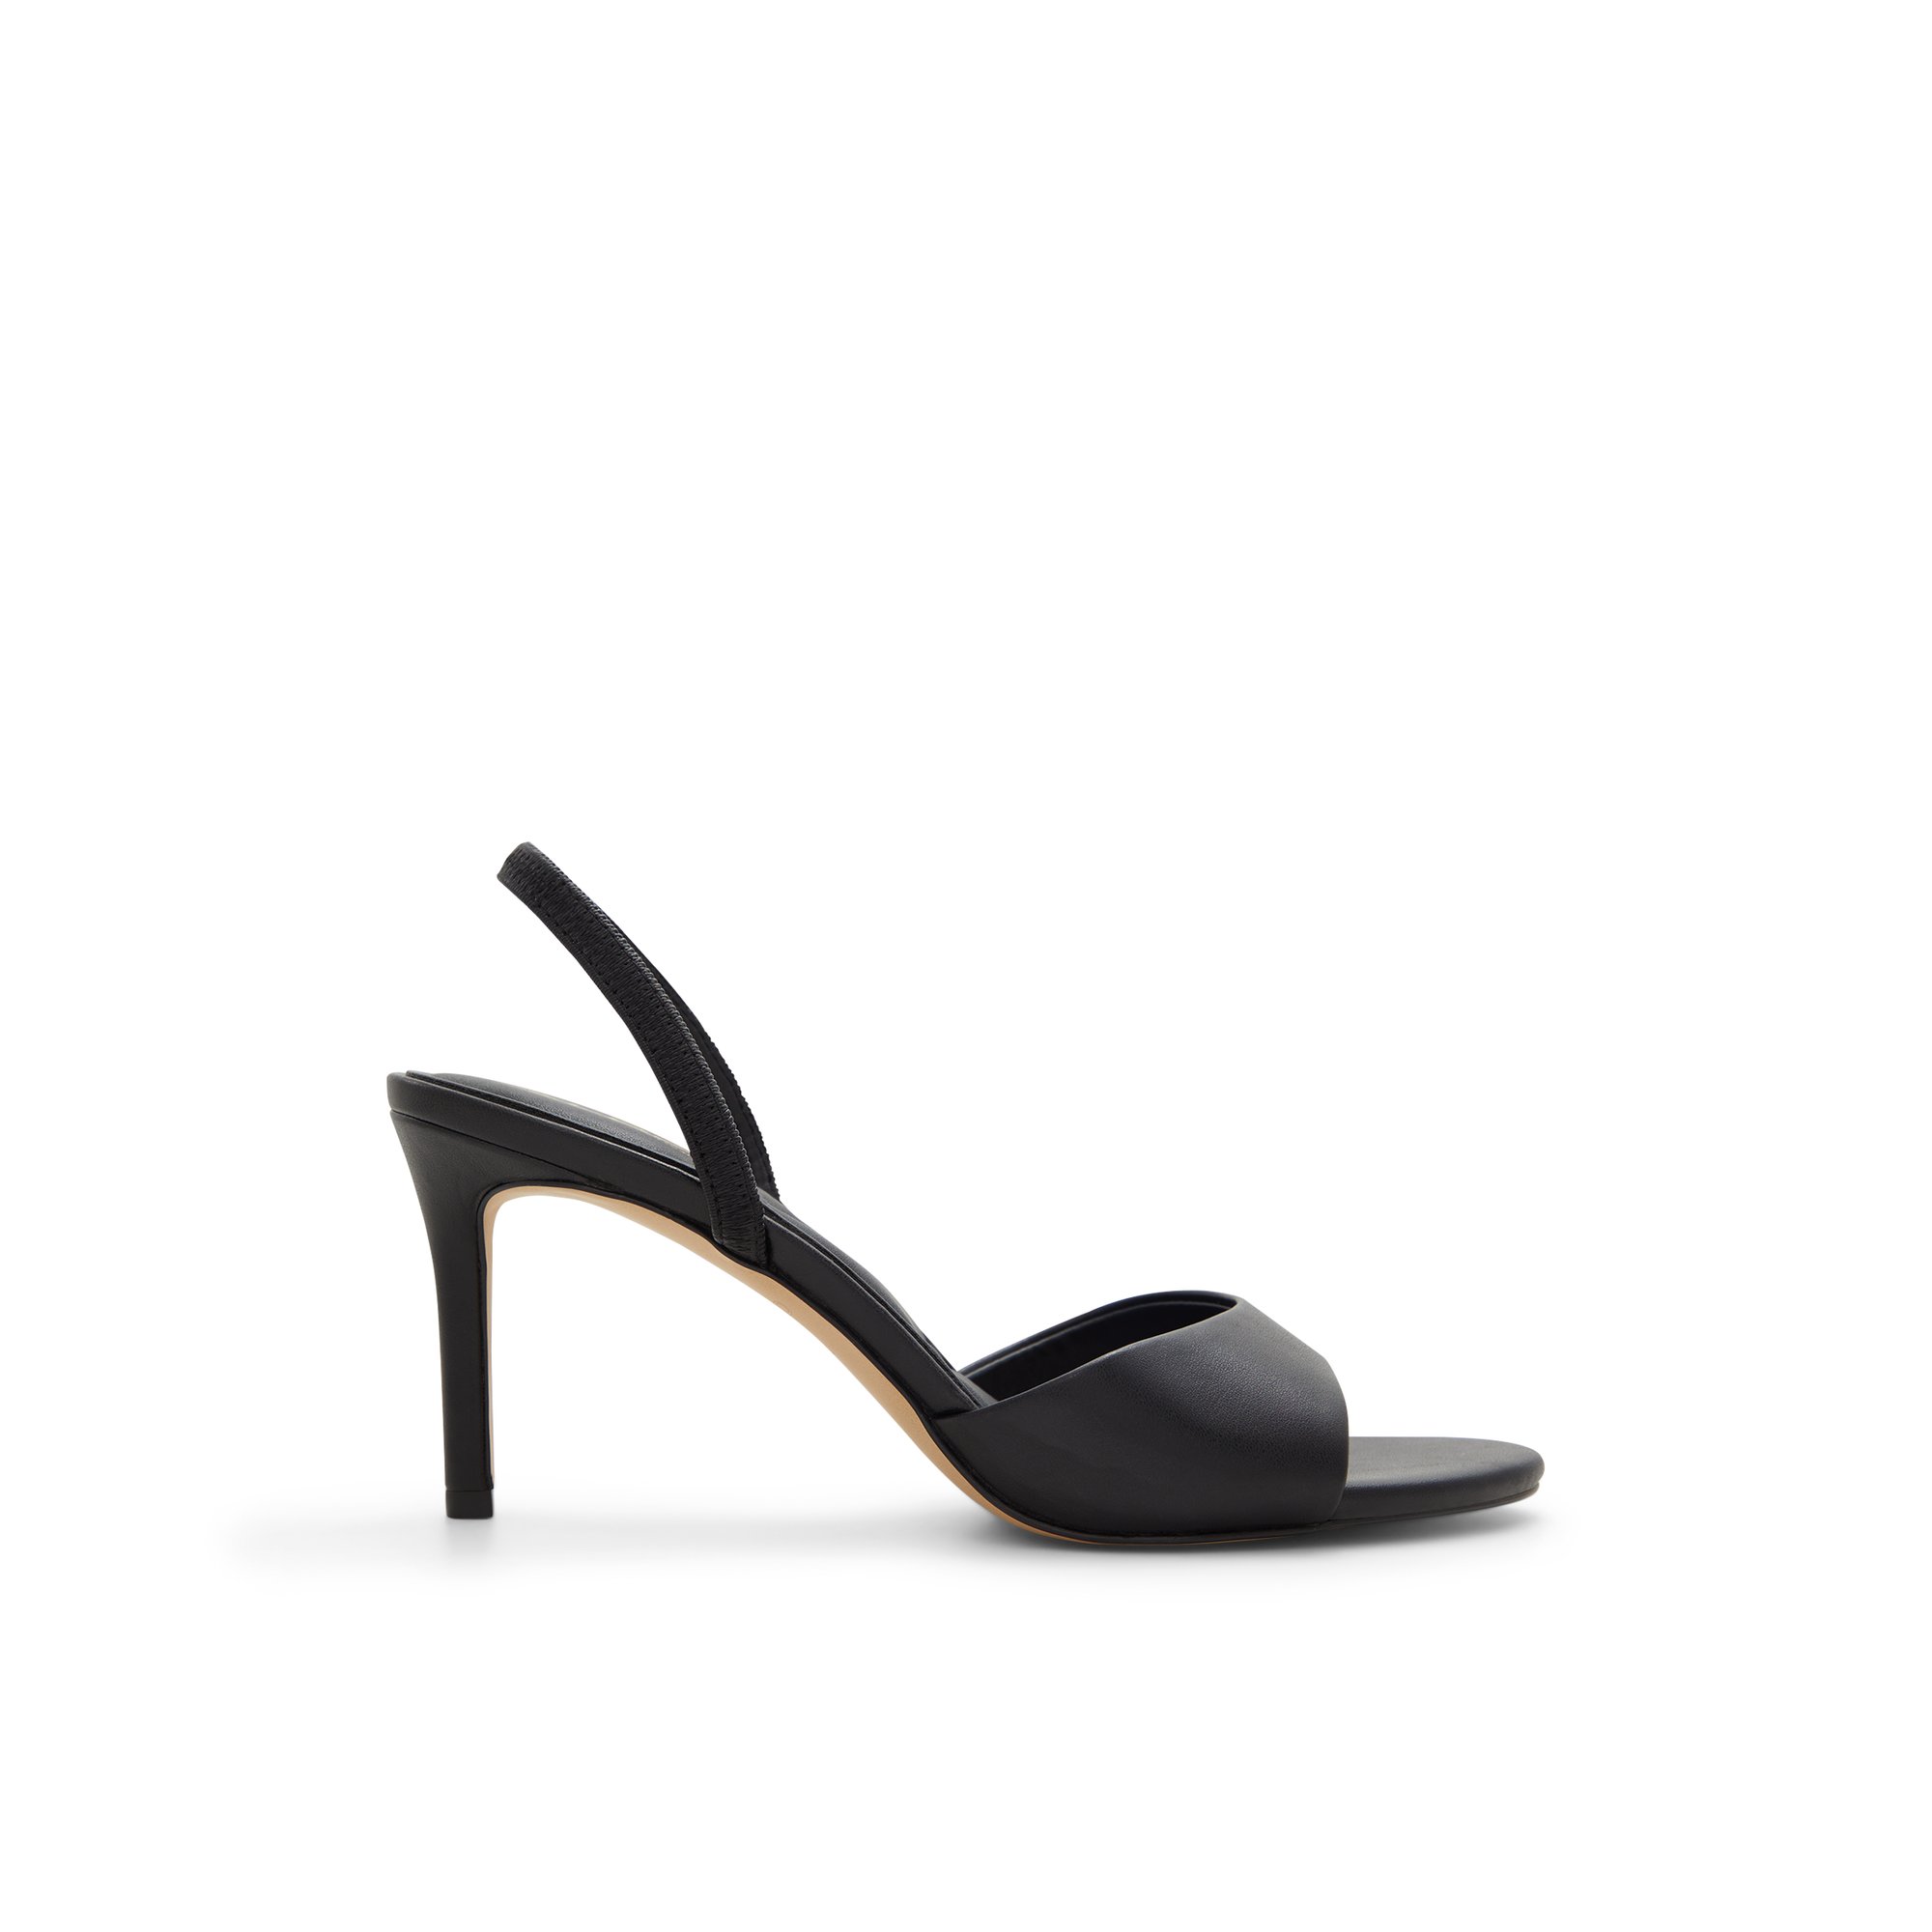 ALDO Aitana - Women's Sandals Heeled - Black